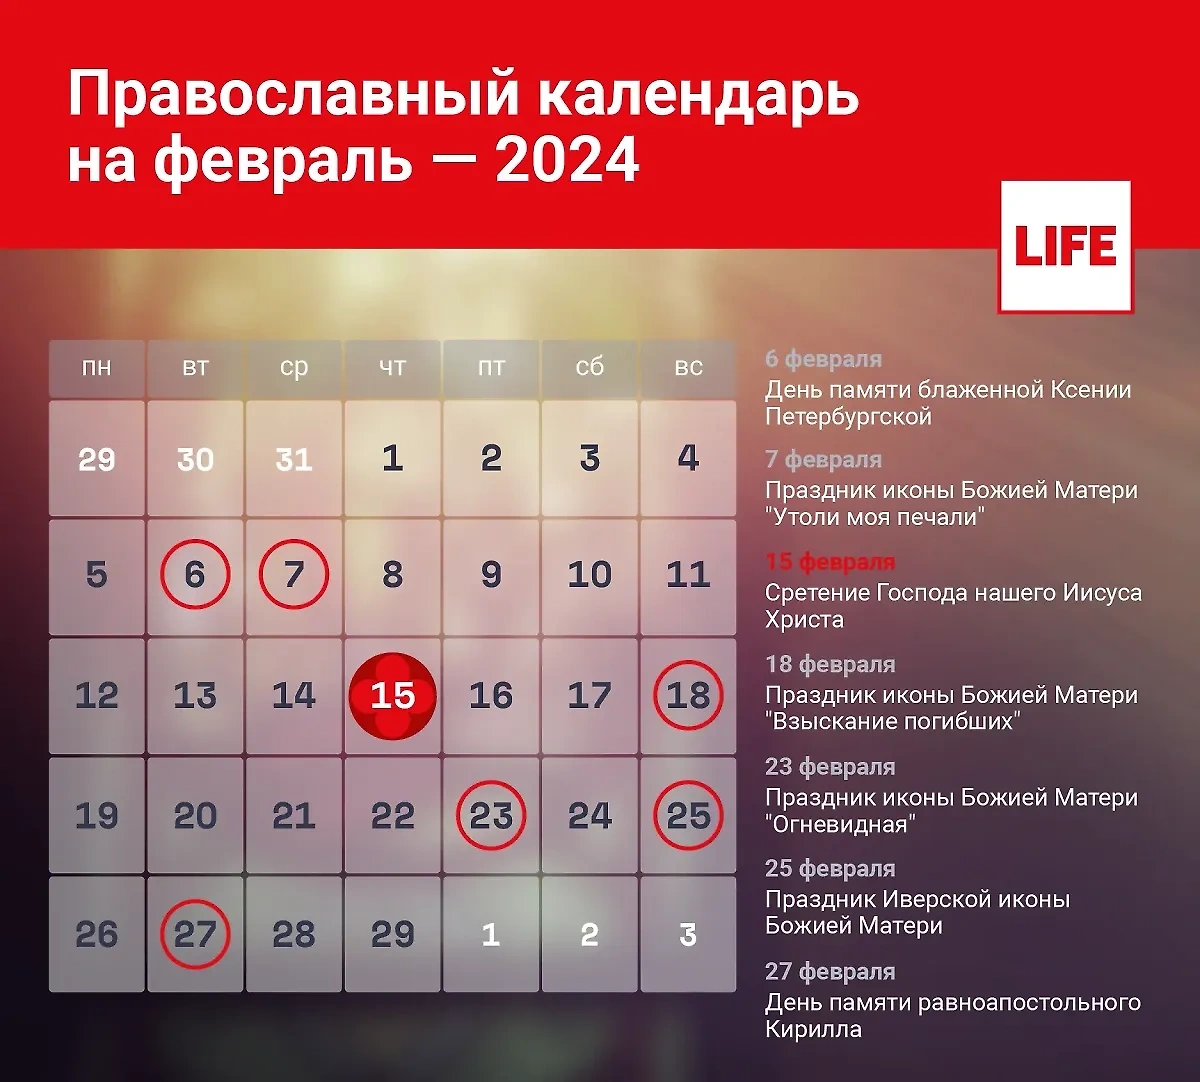 Православный календарь на февраль 2024 года. Инфографика © LIFE 